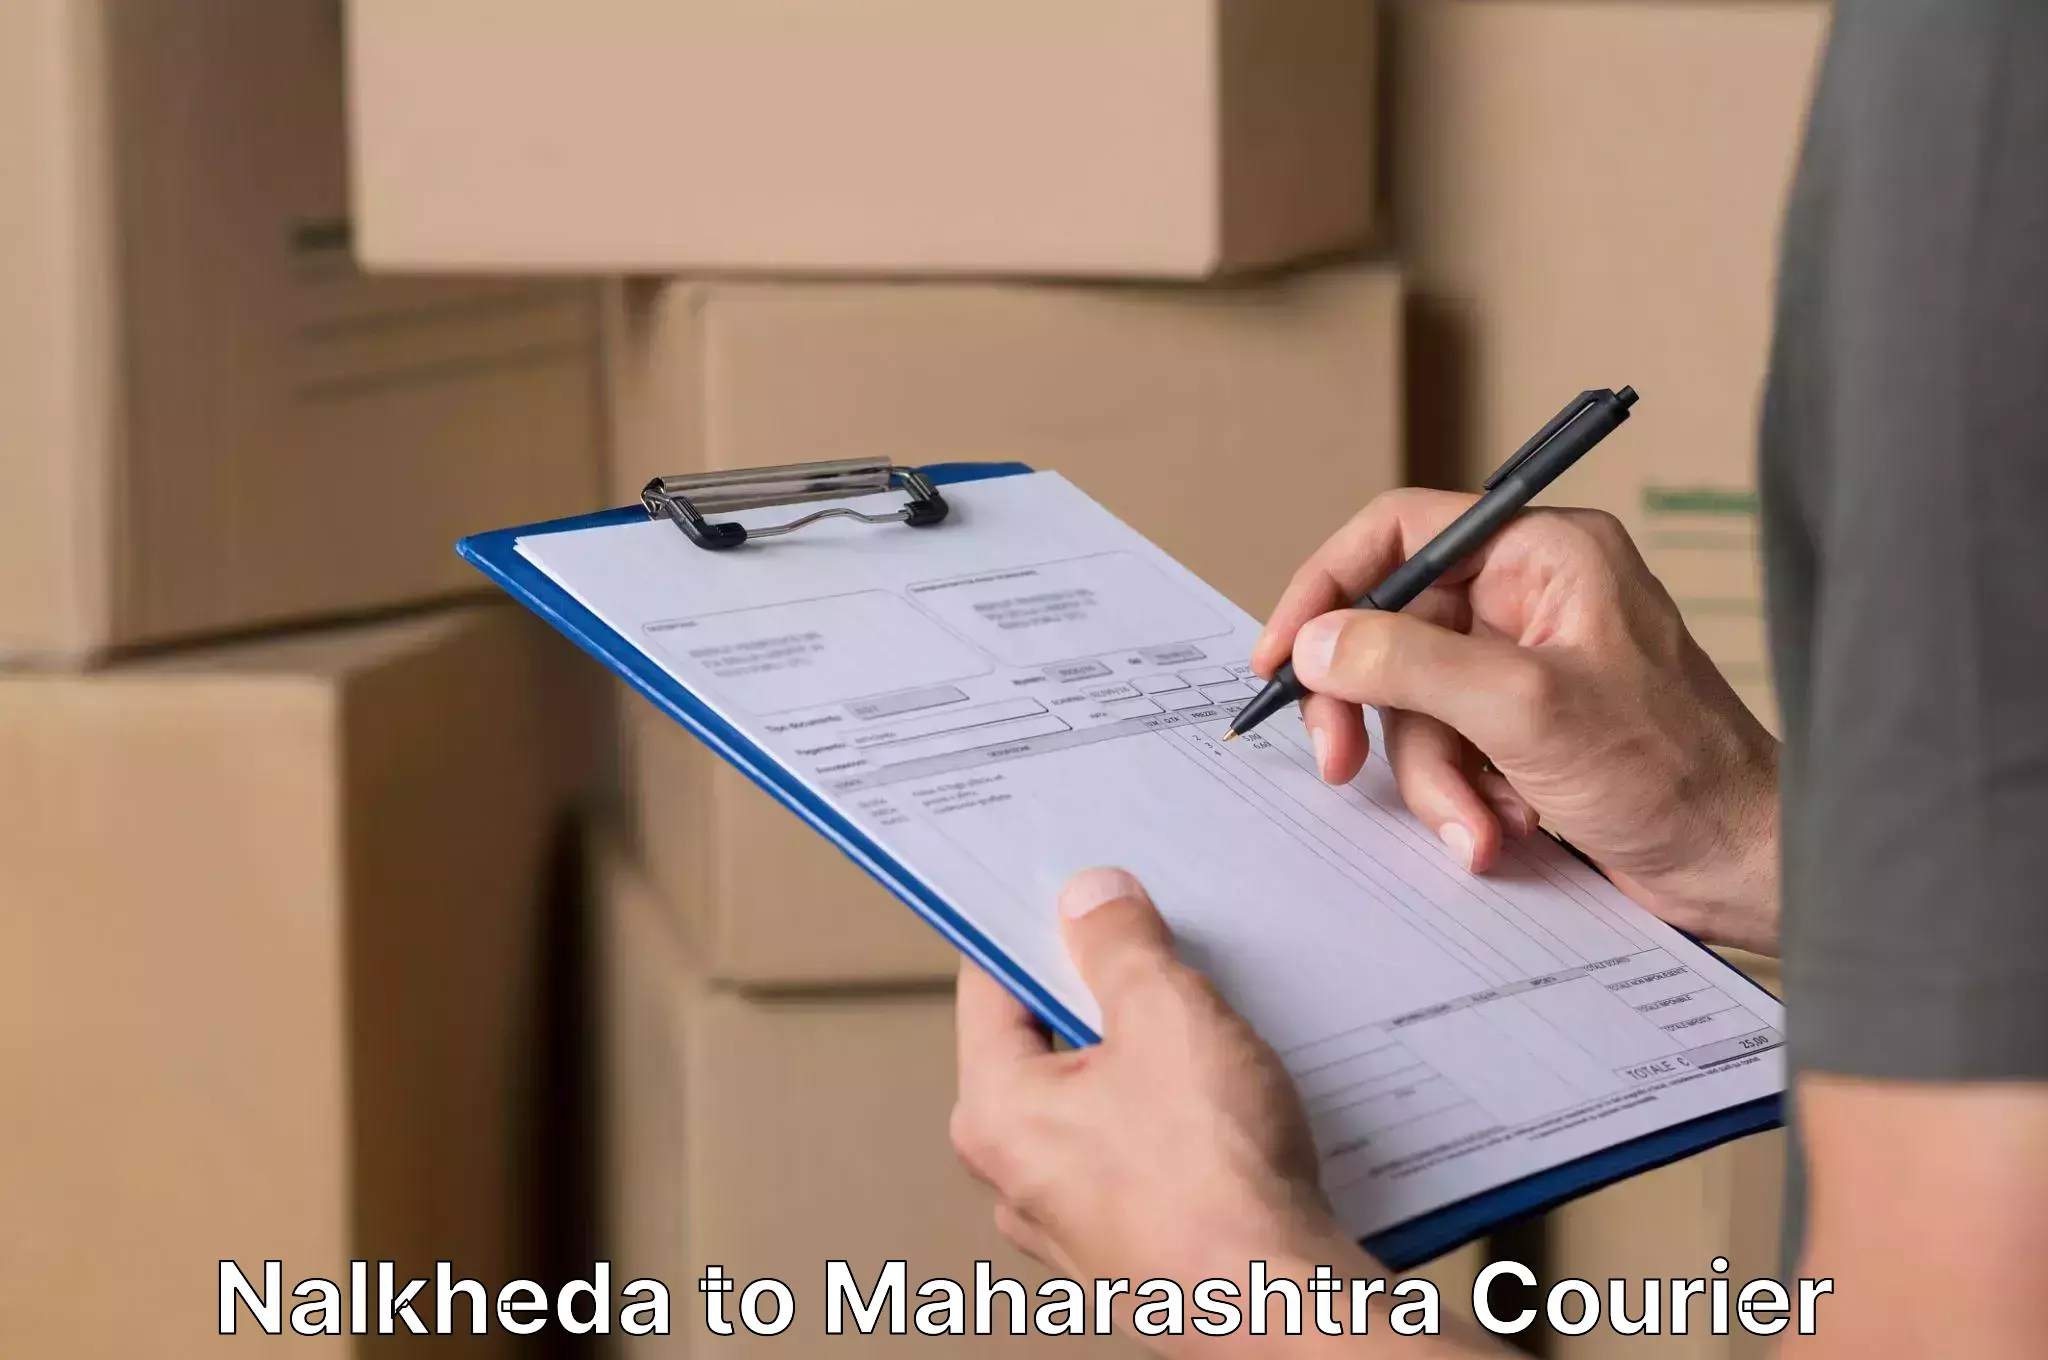 Furniture moving assistance Nalkheda to Ahmednagar